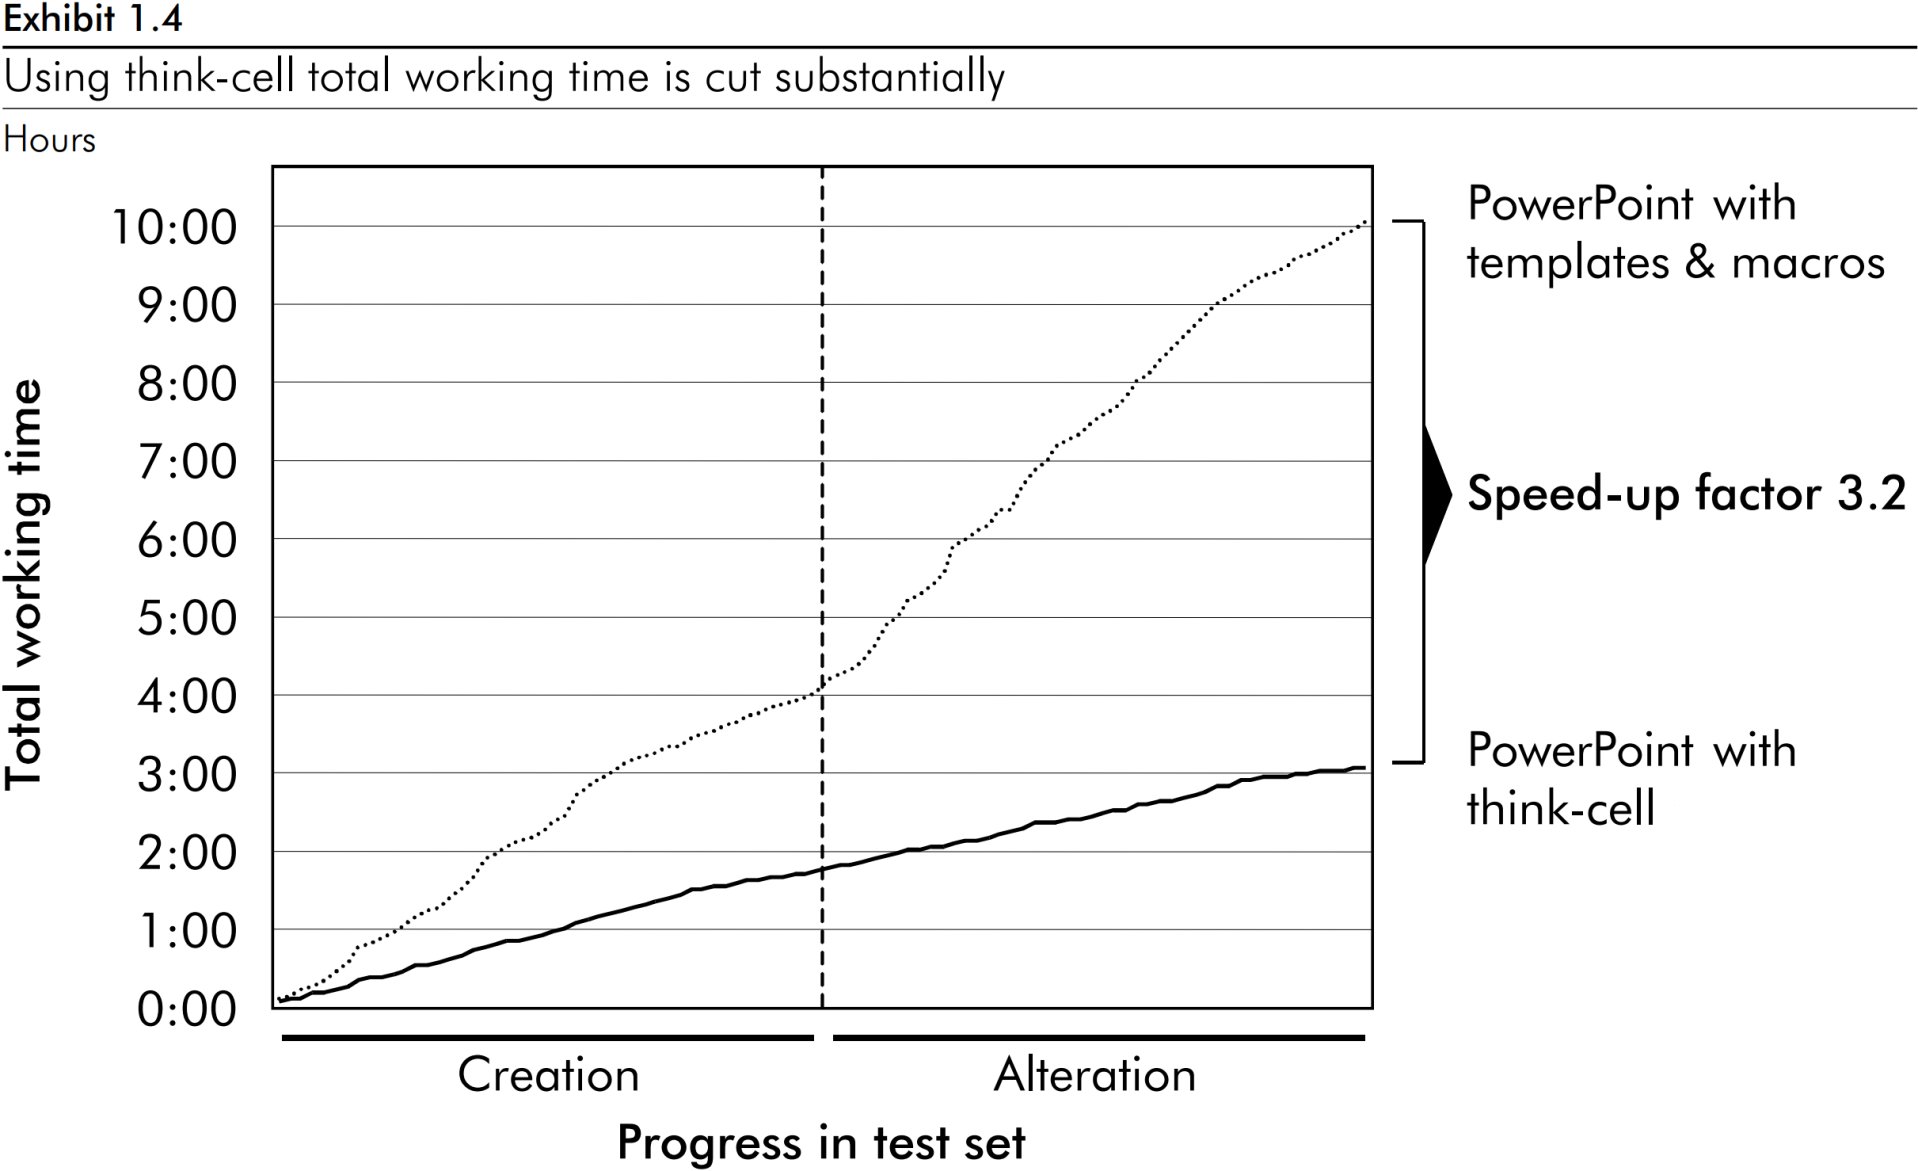 Grafico a linee che mostra un fattore di accelerazione di 3,2 nel tempo di lavoro del grafico totale con think-cell.